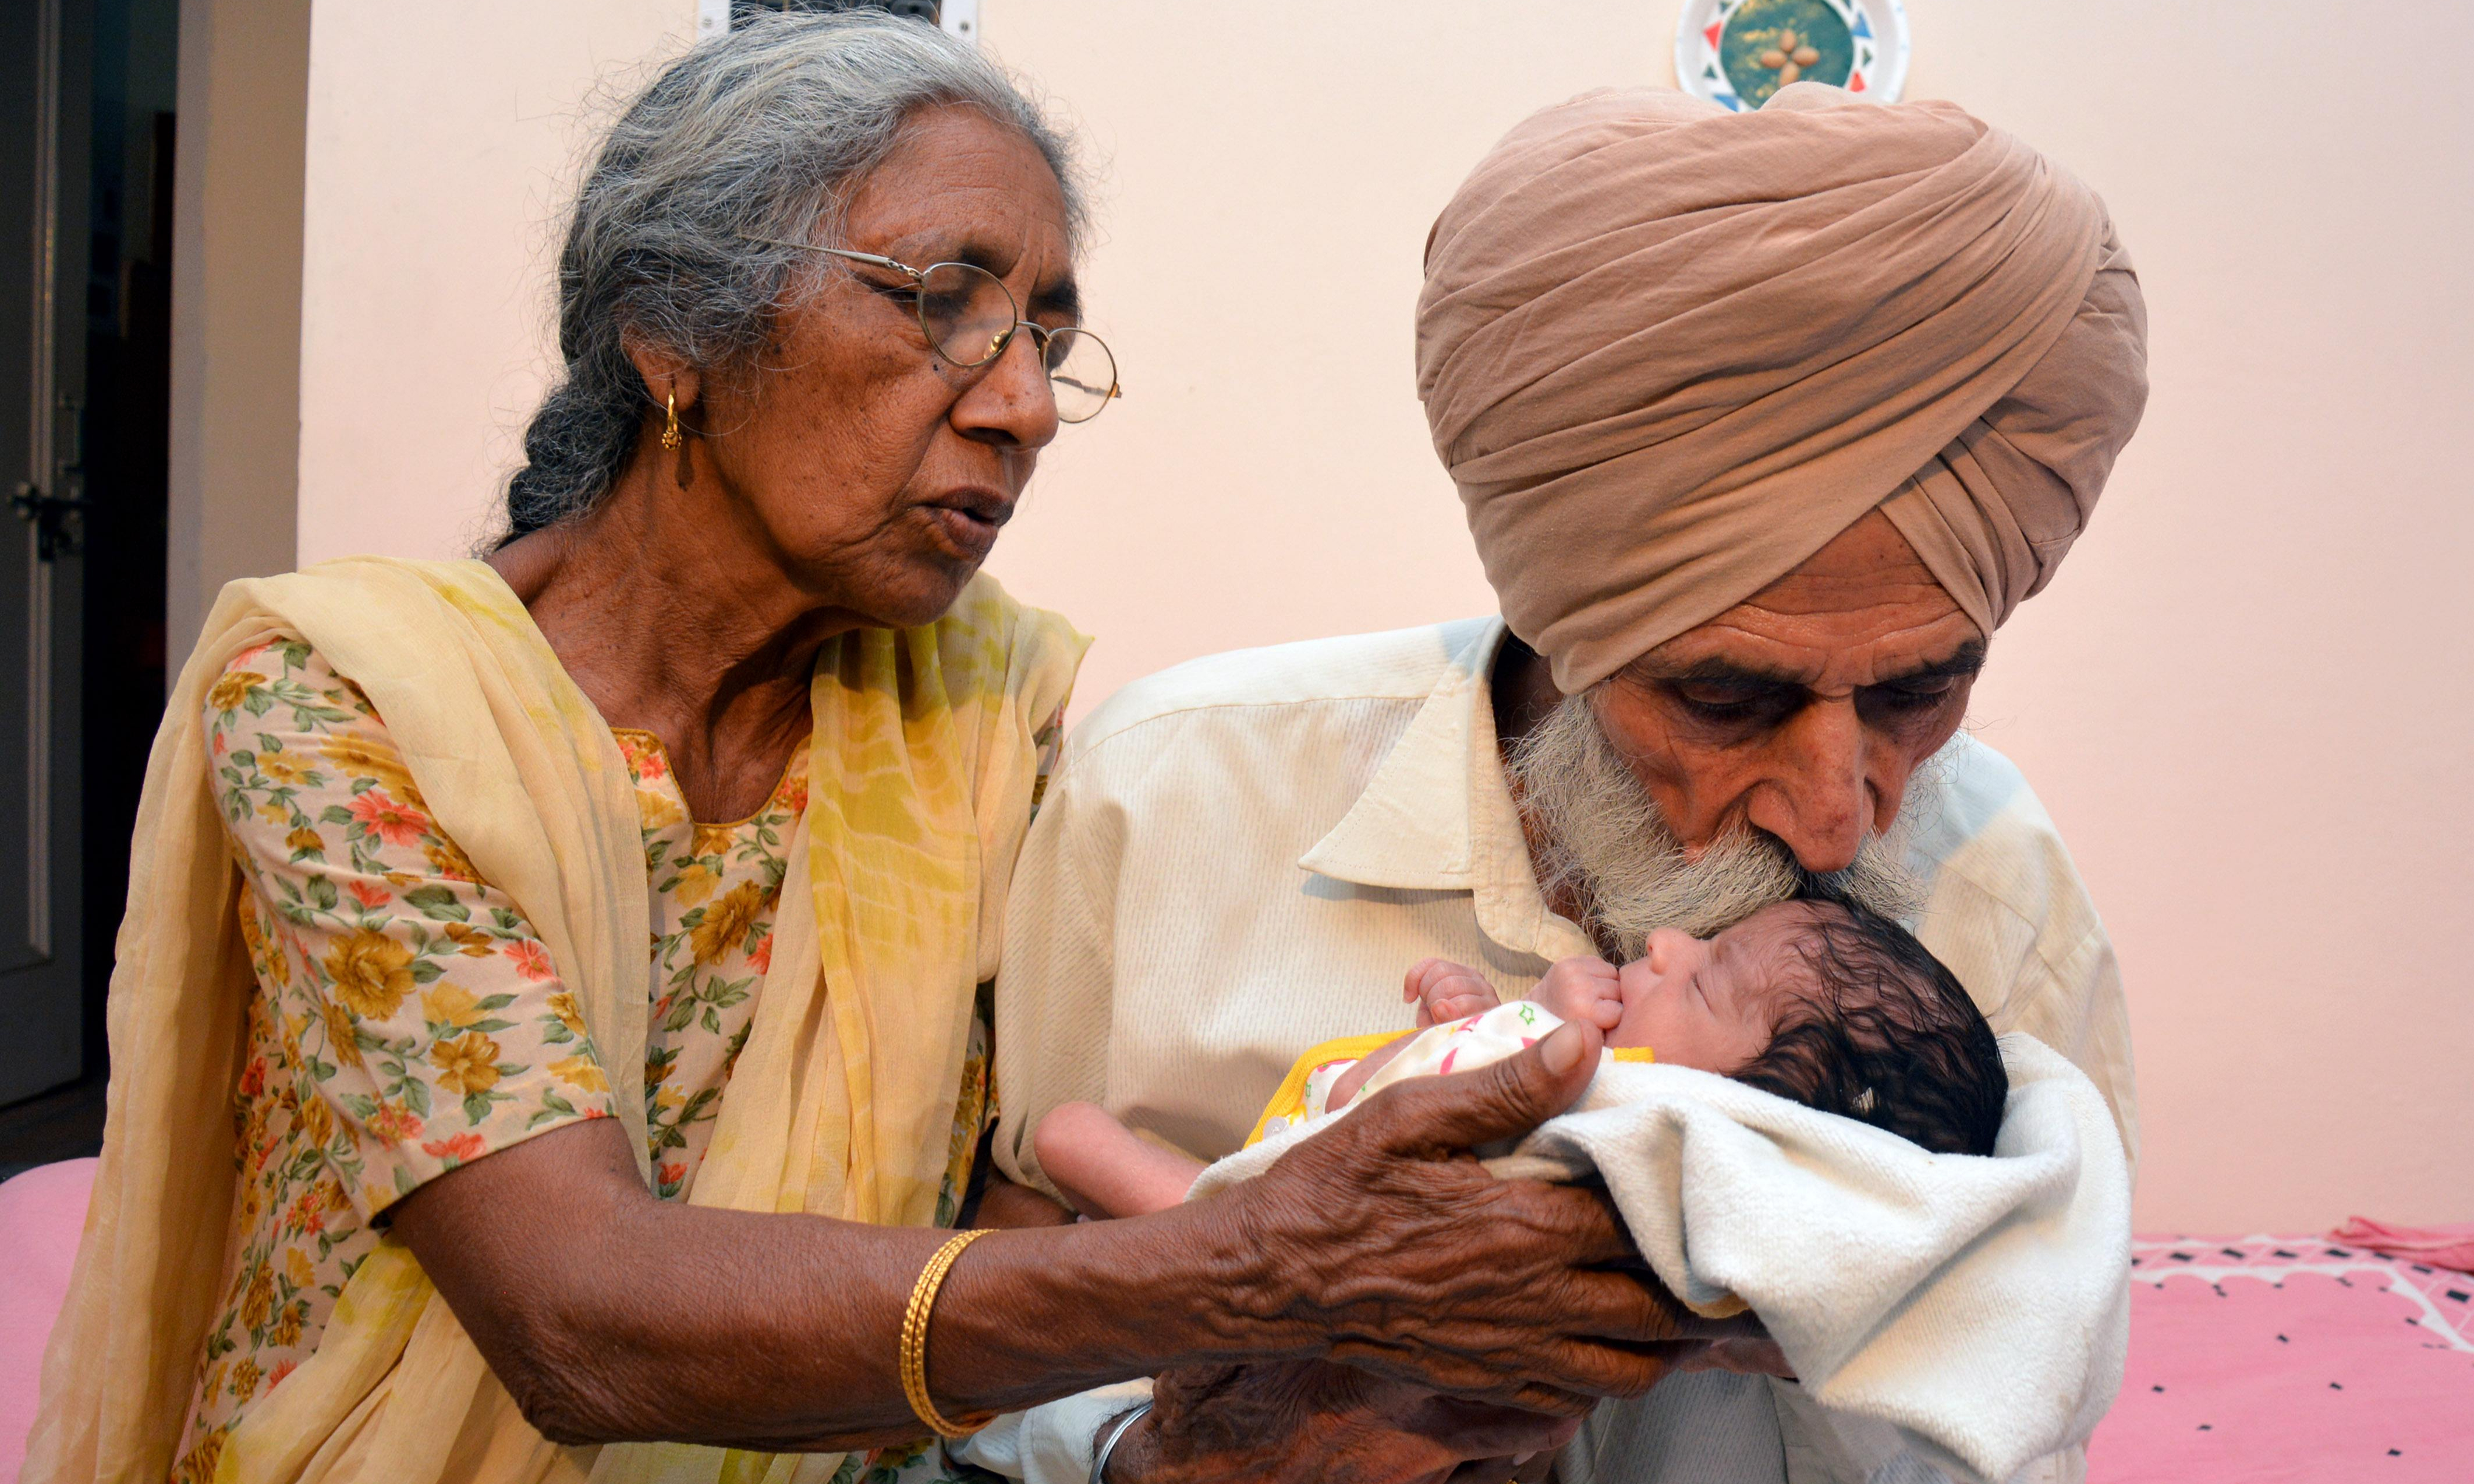 Старая роженица. Женщина в Индии в 70 лет родила ребенка. Самая возрастная роженица в мире.